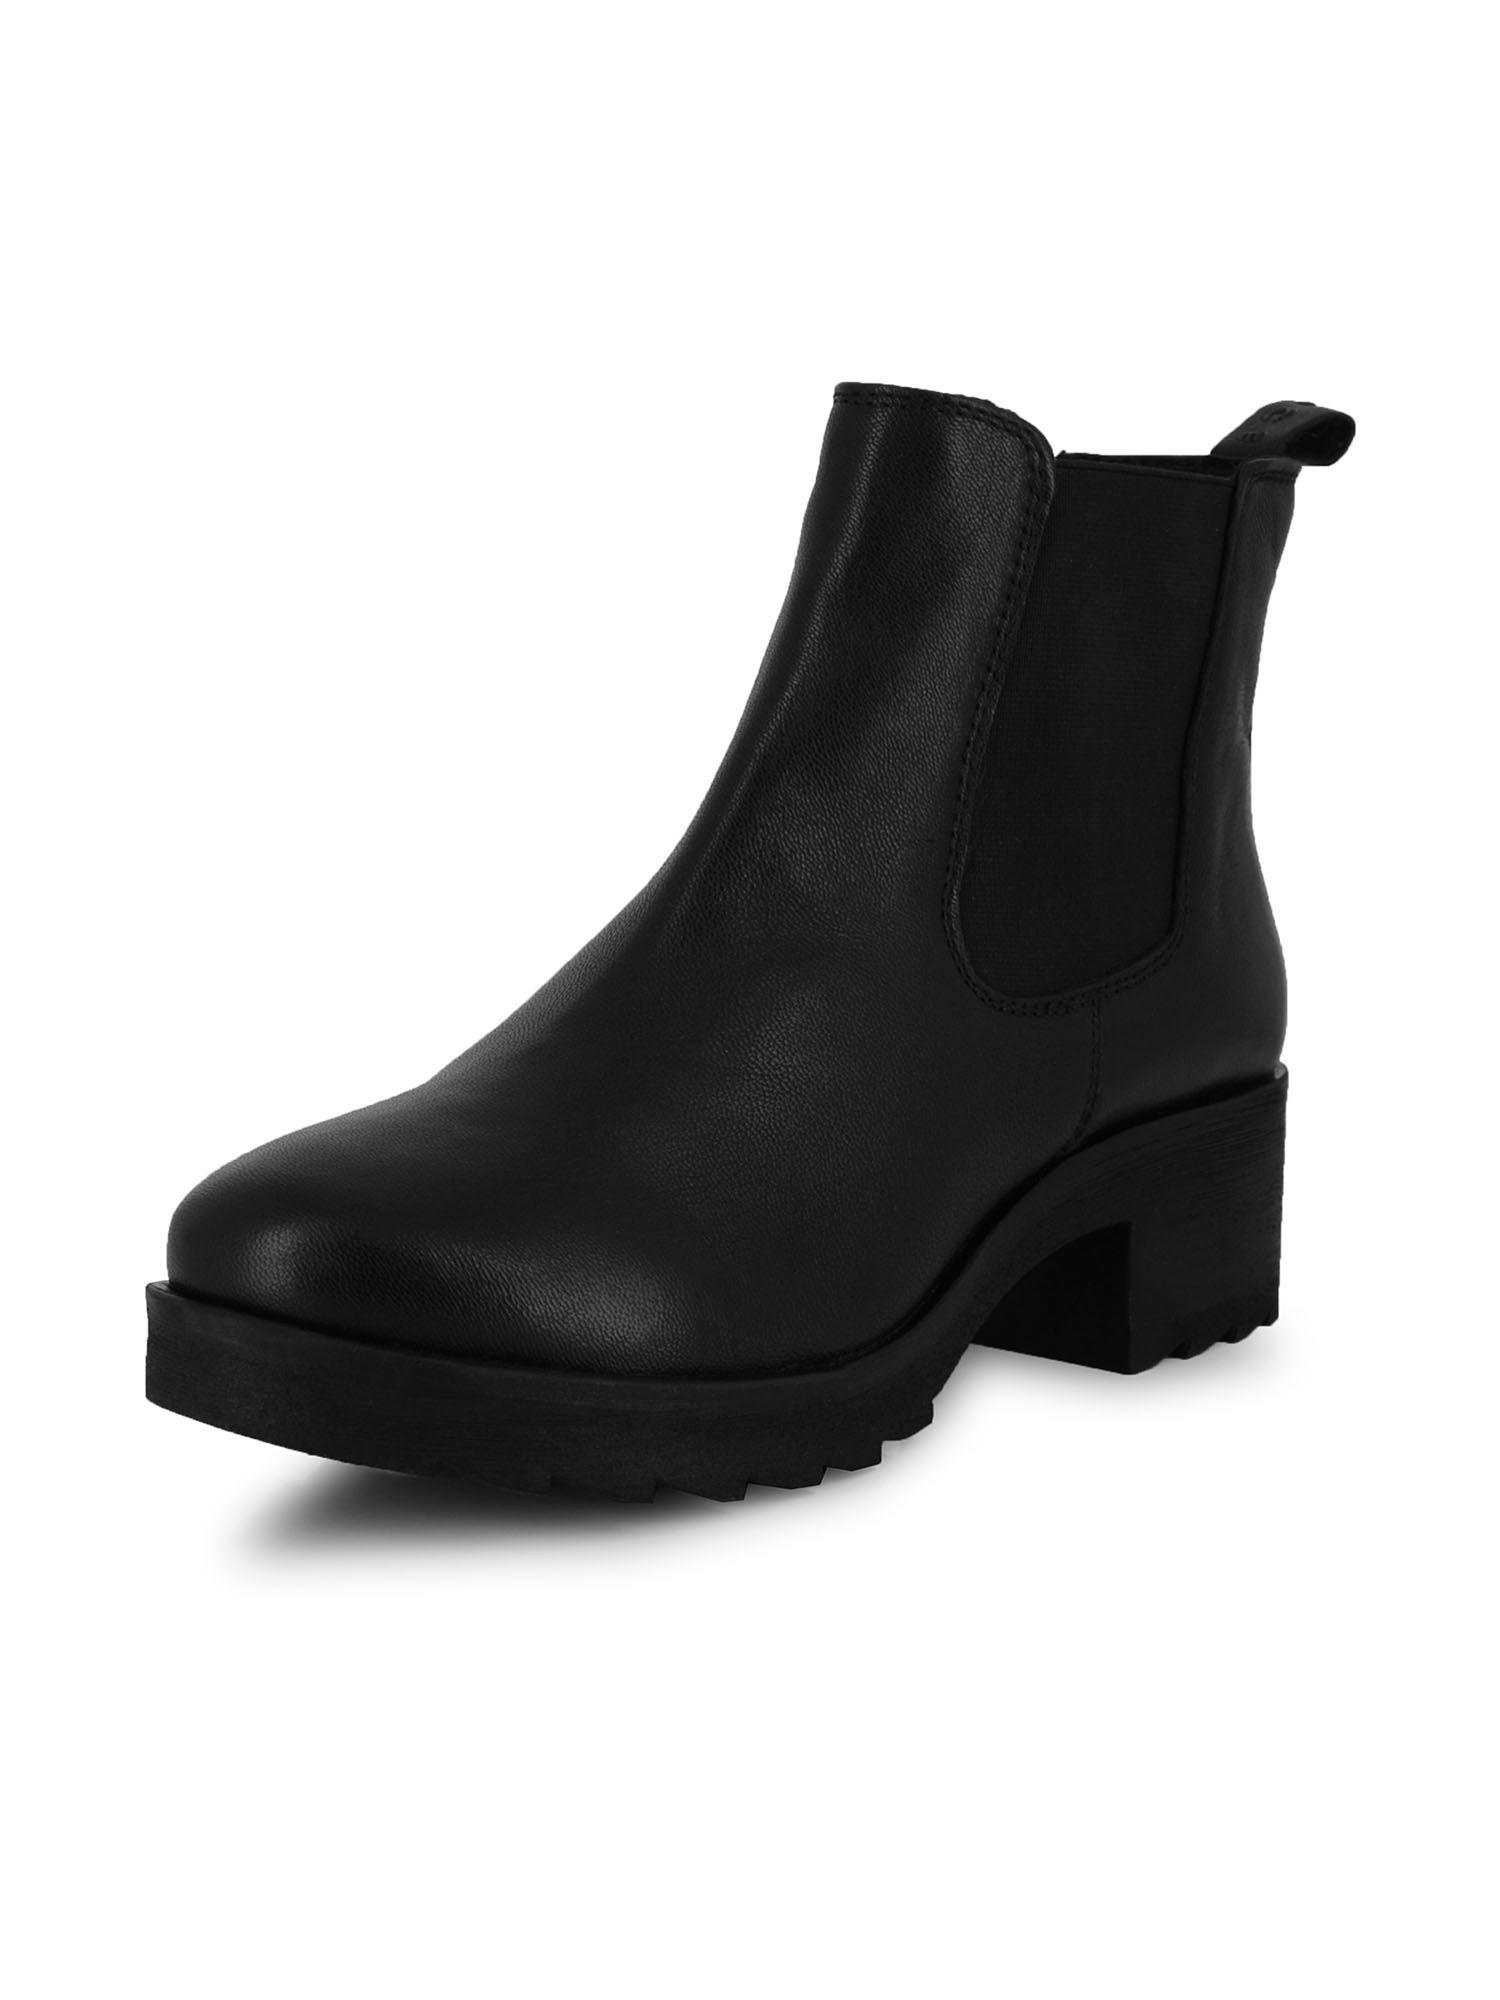 a-la-mode-black-heeled-chelsea-boots